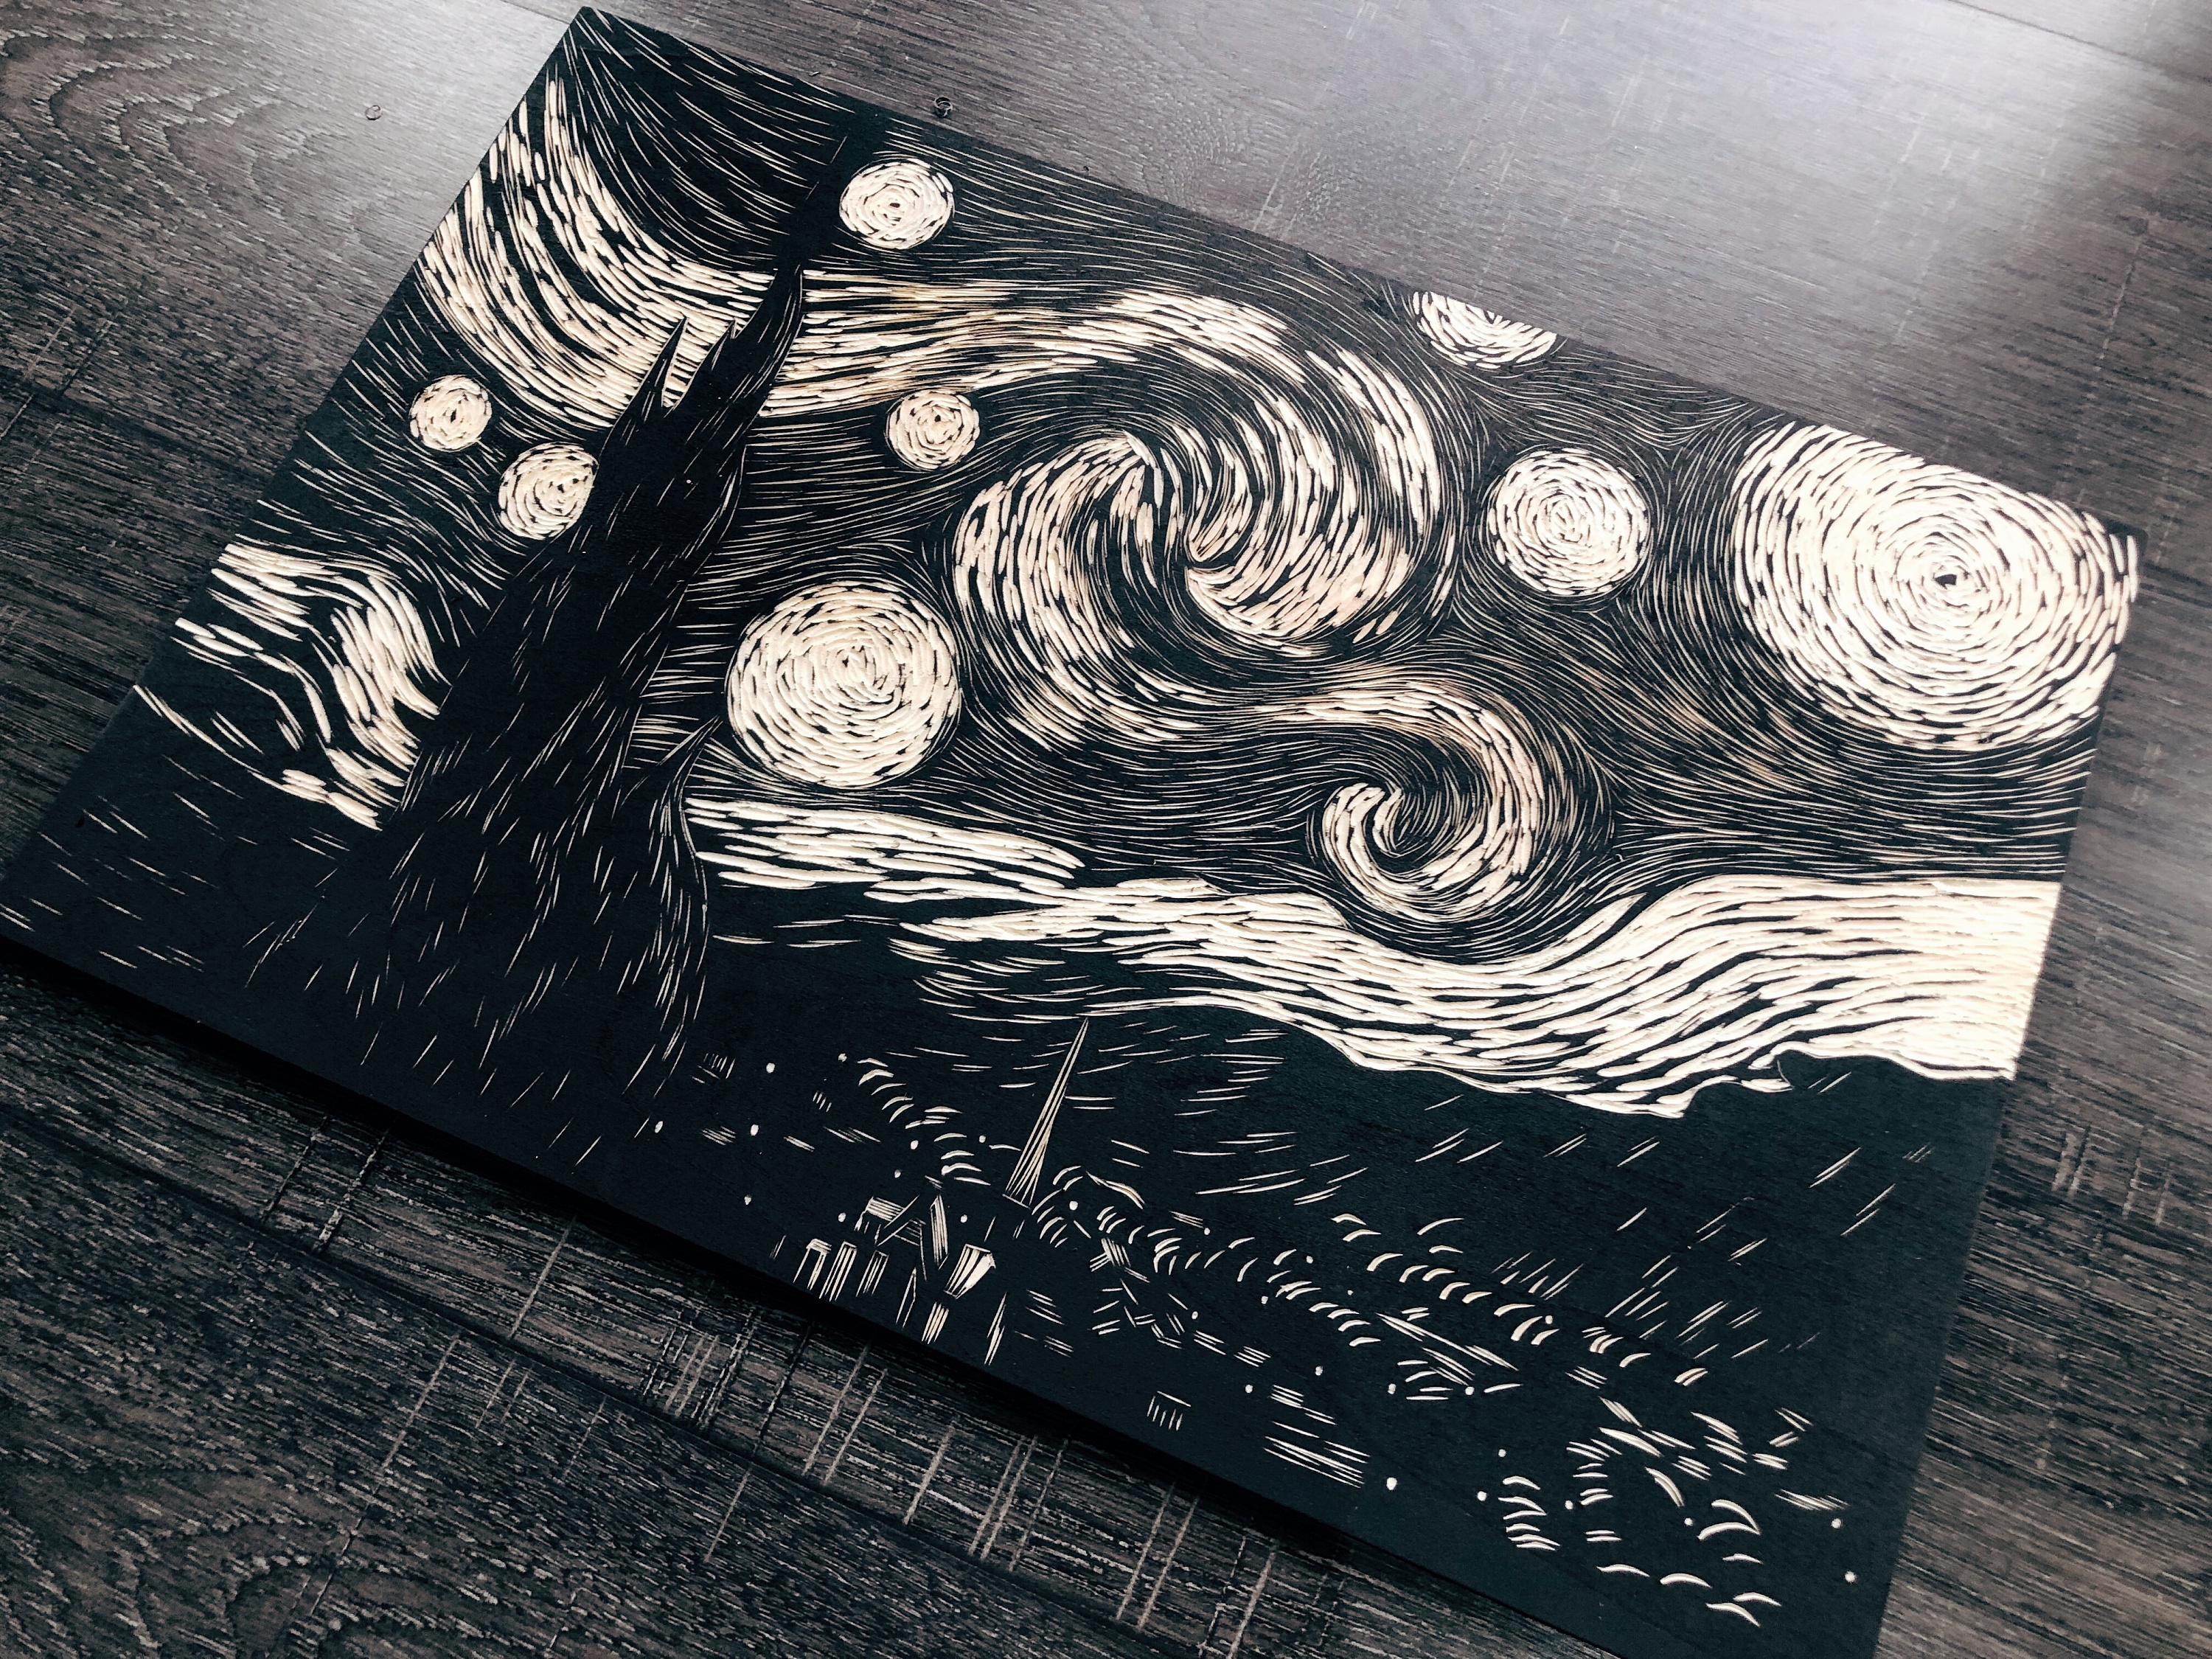 手工雕刻黑白木刻版画《星空》《神奈川冲浪里》